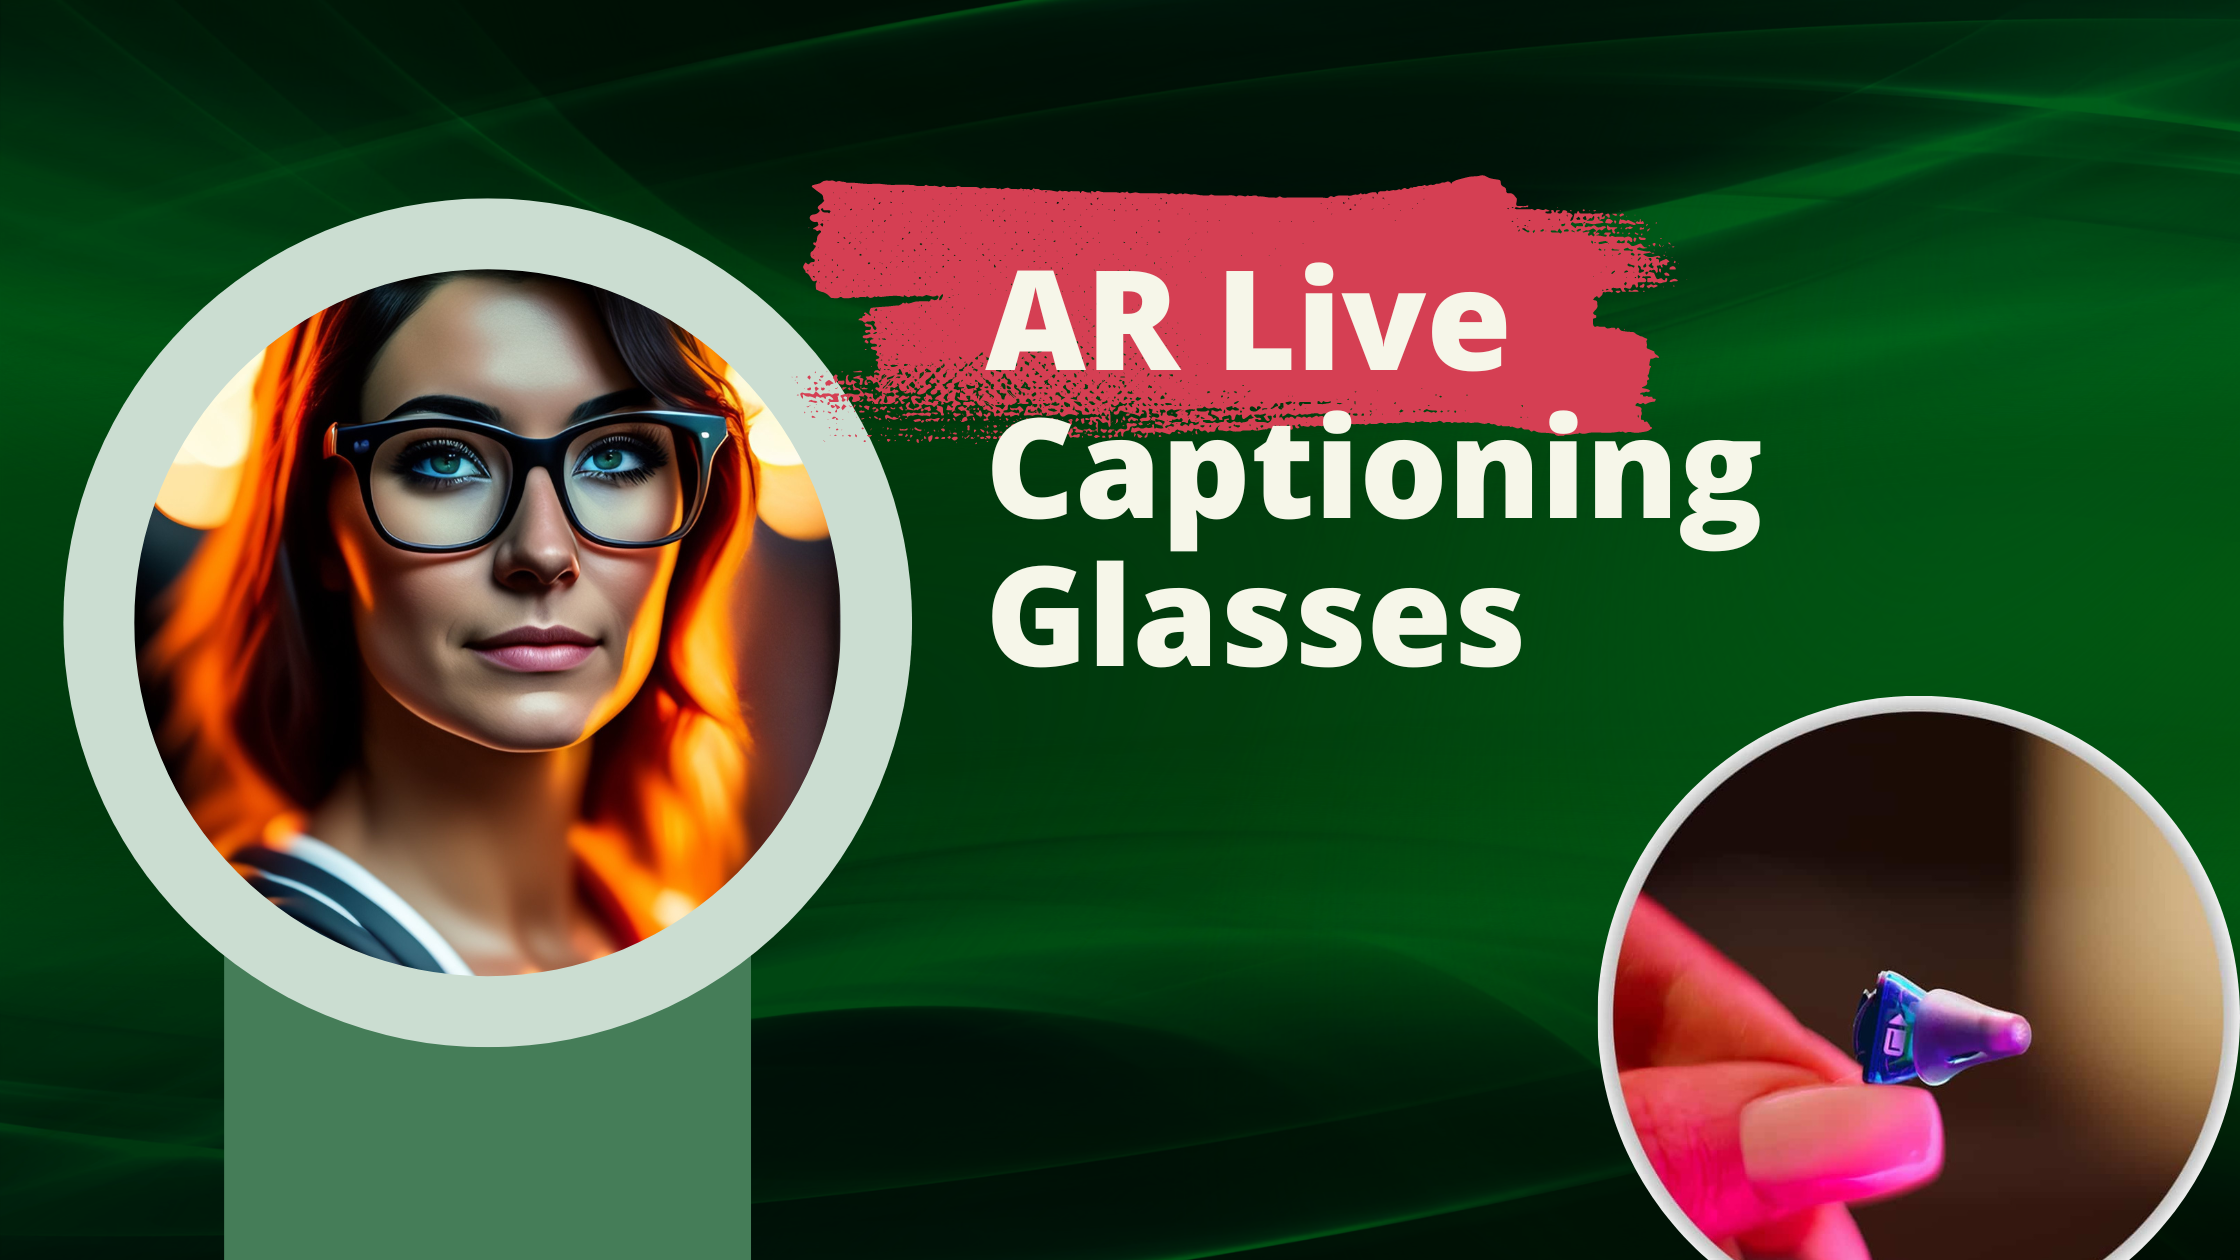 AR Live Captioning Glasses